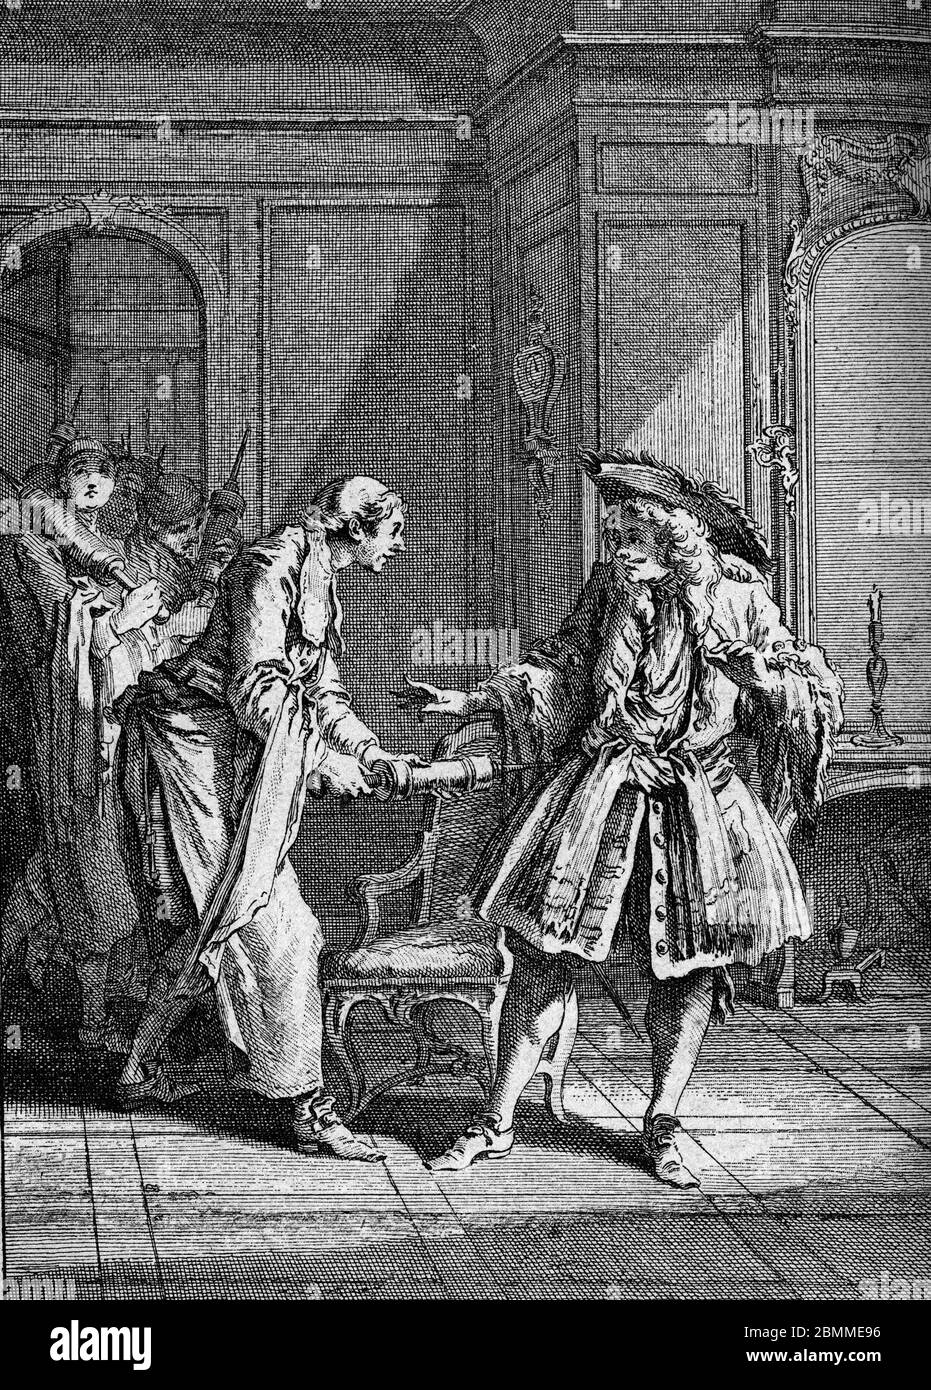 'Monsieur de Pourceaugnac' Gravure tiree de 'Oeuvres' de Jean-Baptiste Poquelin dit Moliere (Jean Baptiste Poquelin, 1622-1673), dramaturge et acteur Stock Photo